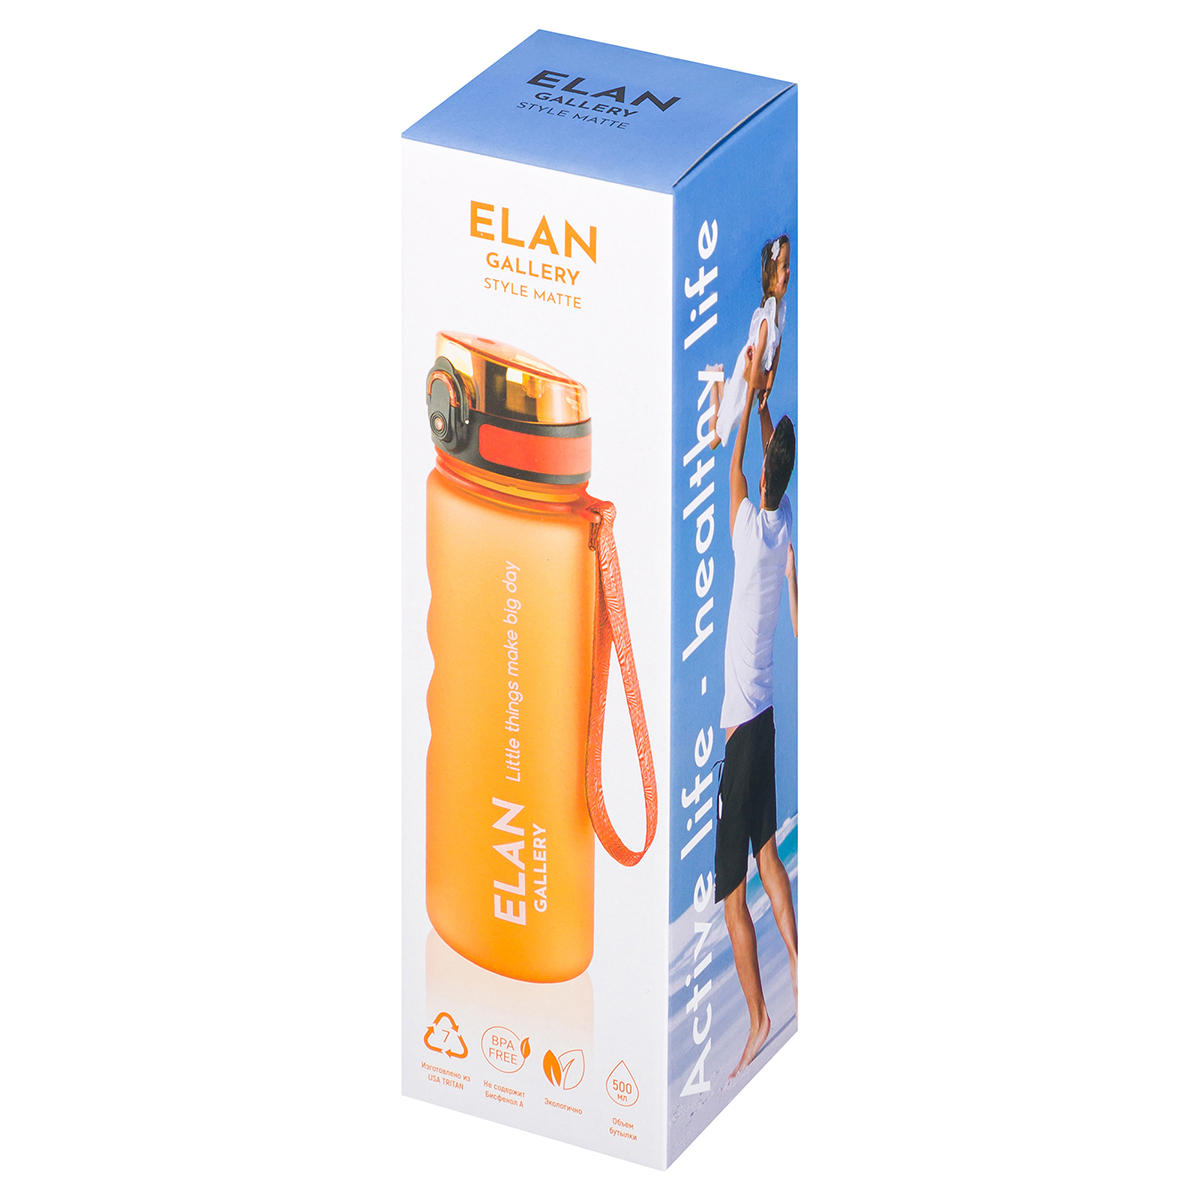 Бутылка для воды Elan Gallery 500 мл Style Matte оранжевая - фото 12